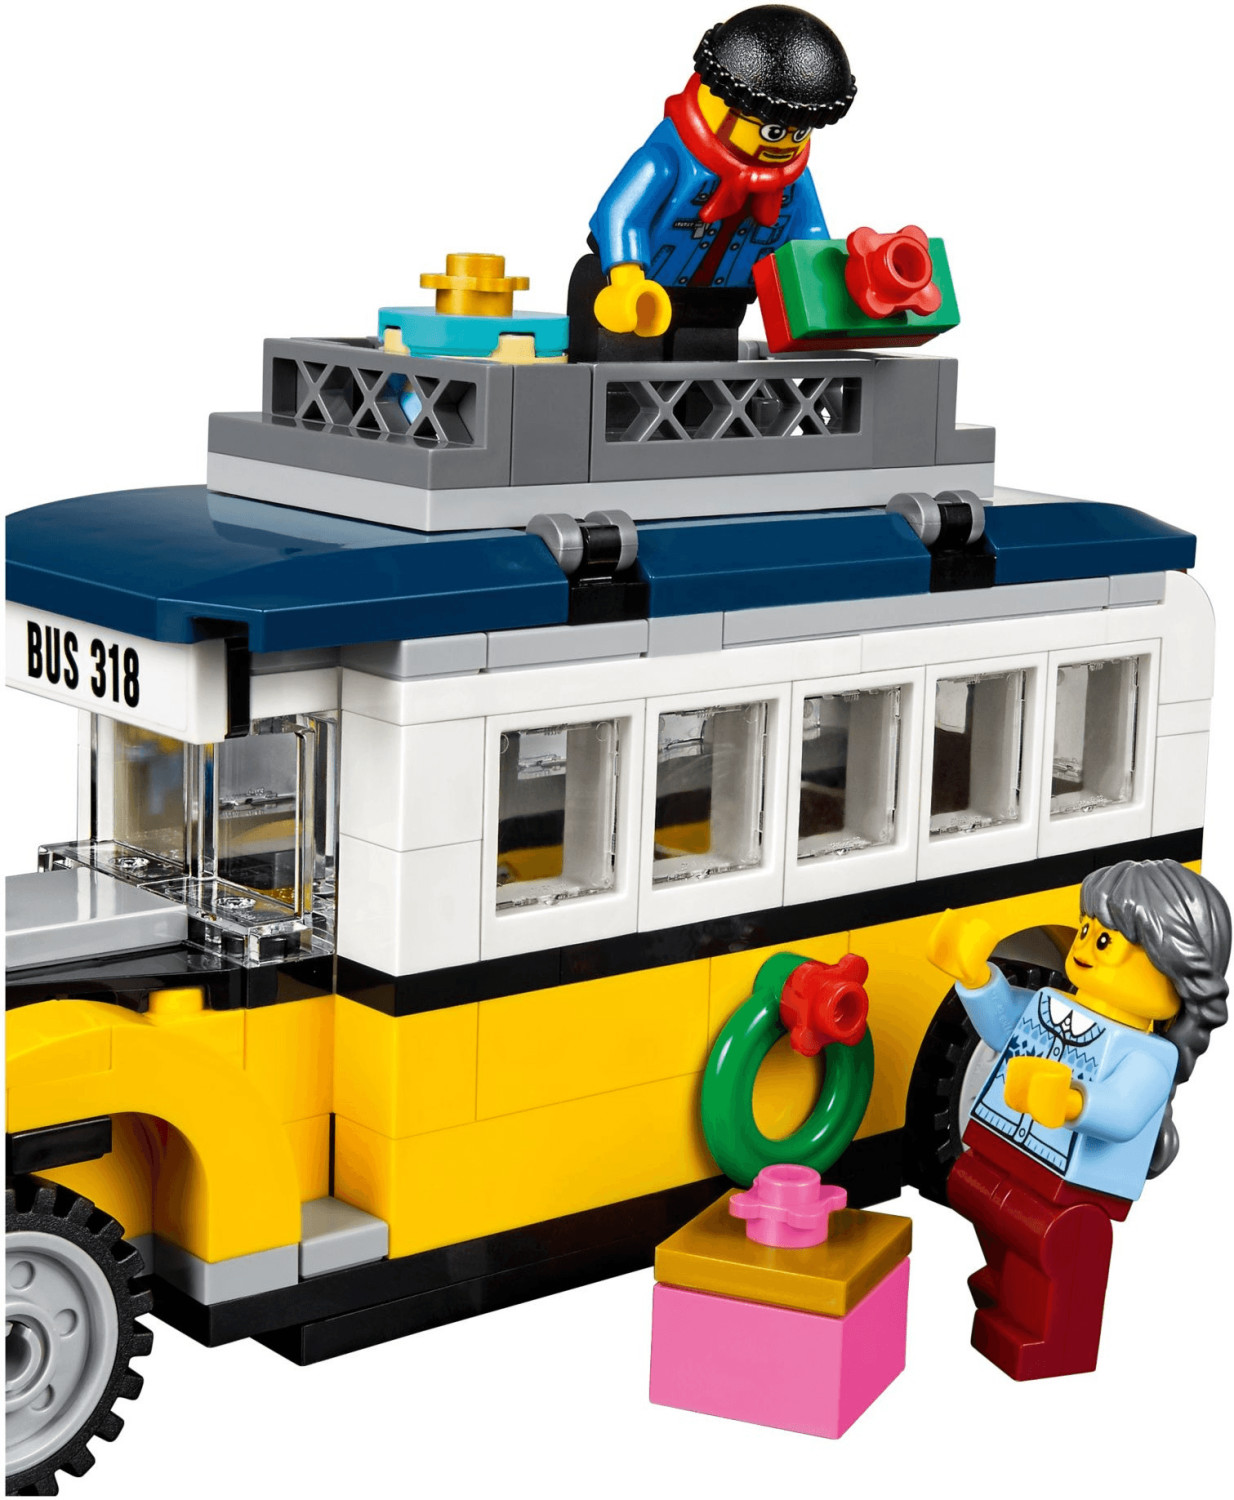 LEGO 10249 CREATOR EXPERT IL NEGOZIO DI GIOCATTOLI INVERNALE